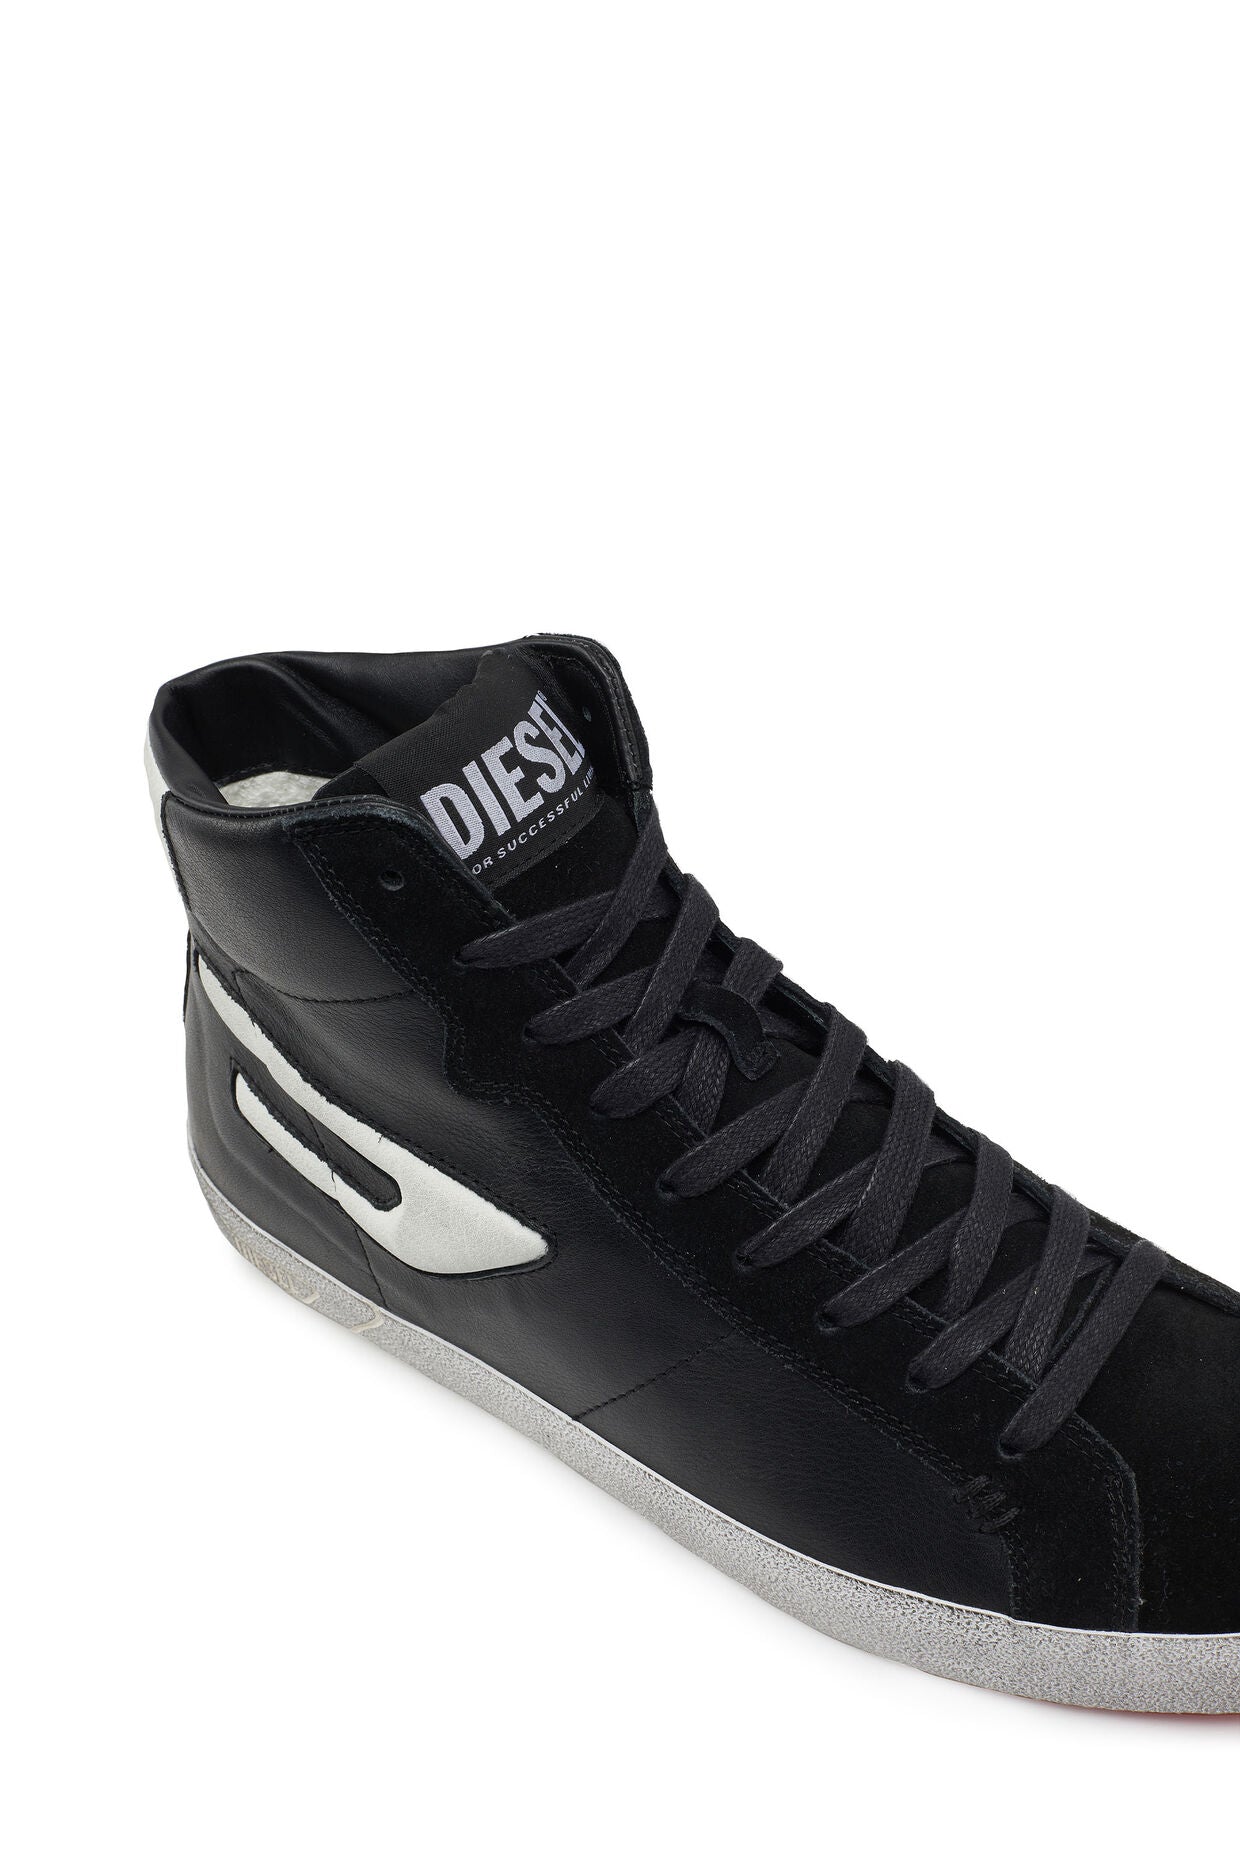 Diesel S-Leroji Mid - High Top Sneaker | Black &amp; White